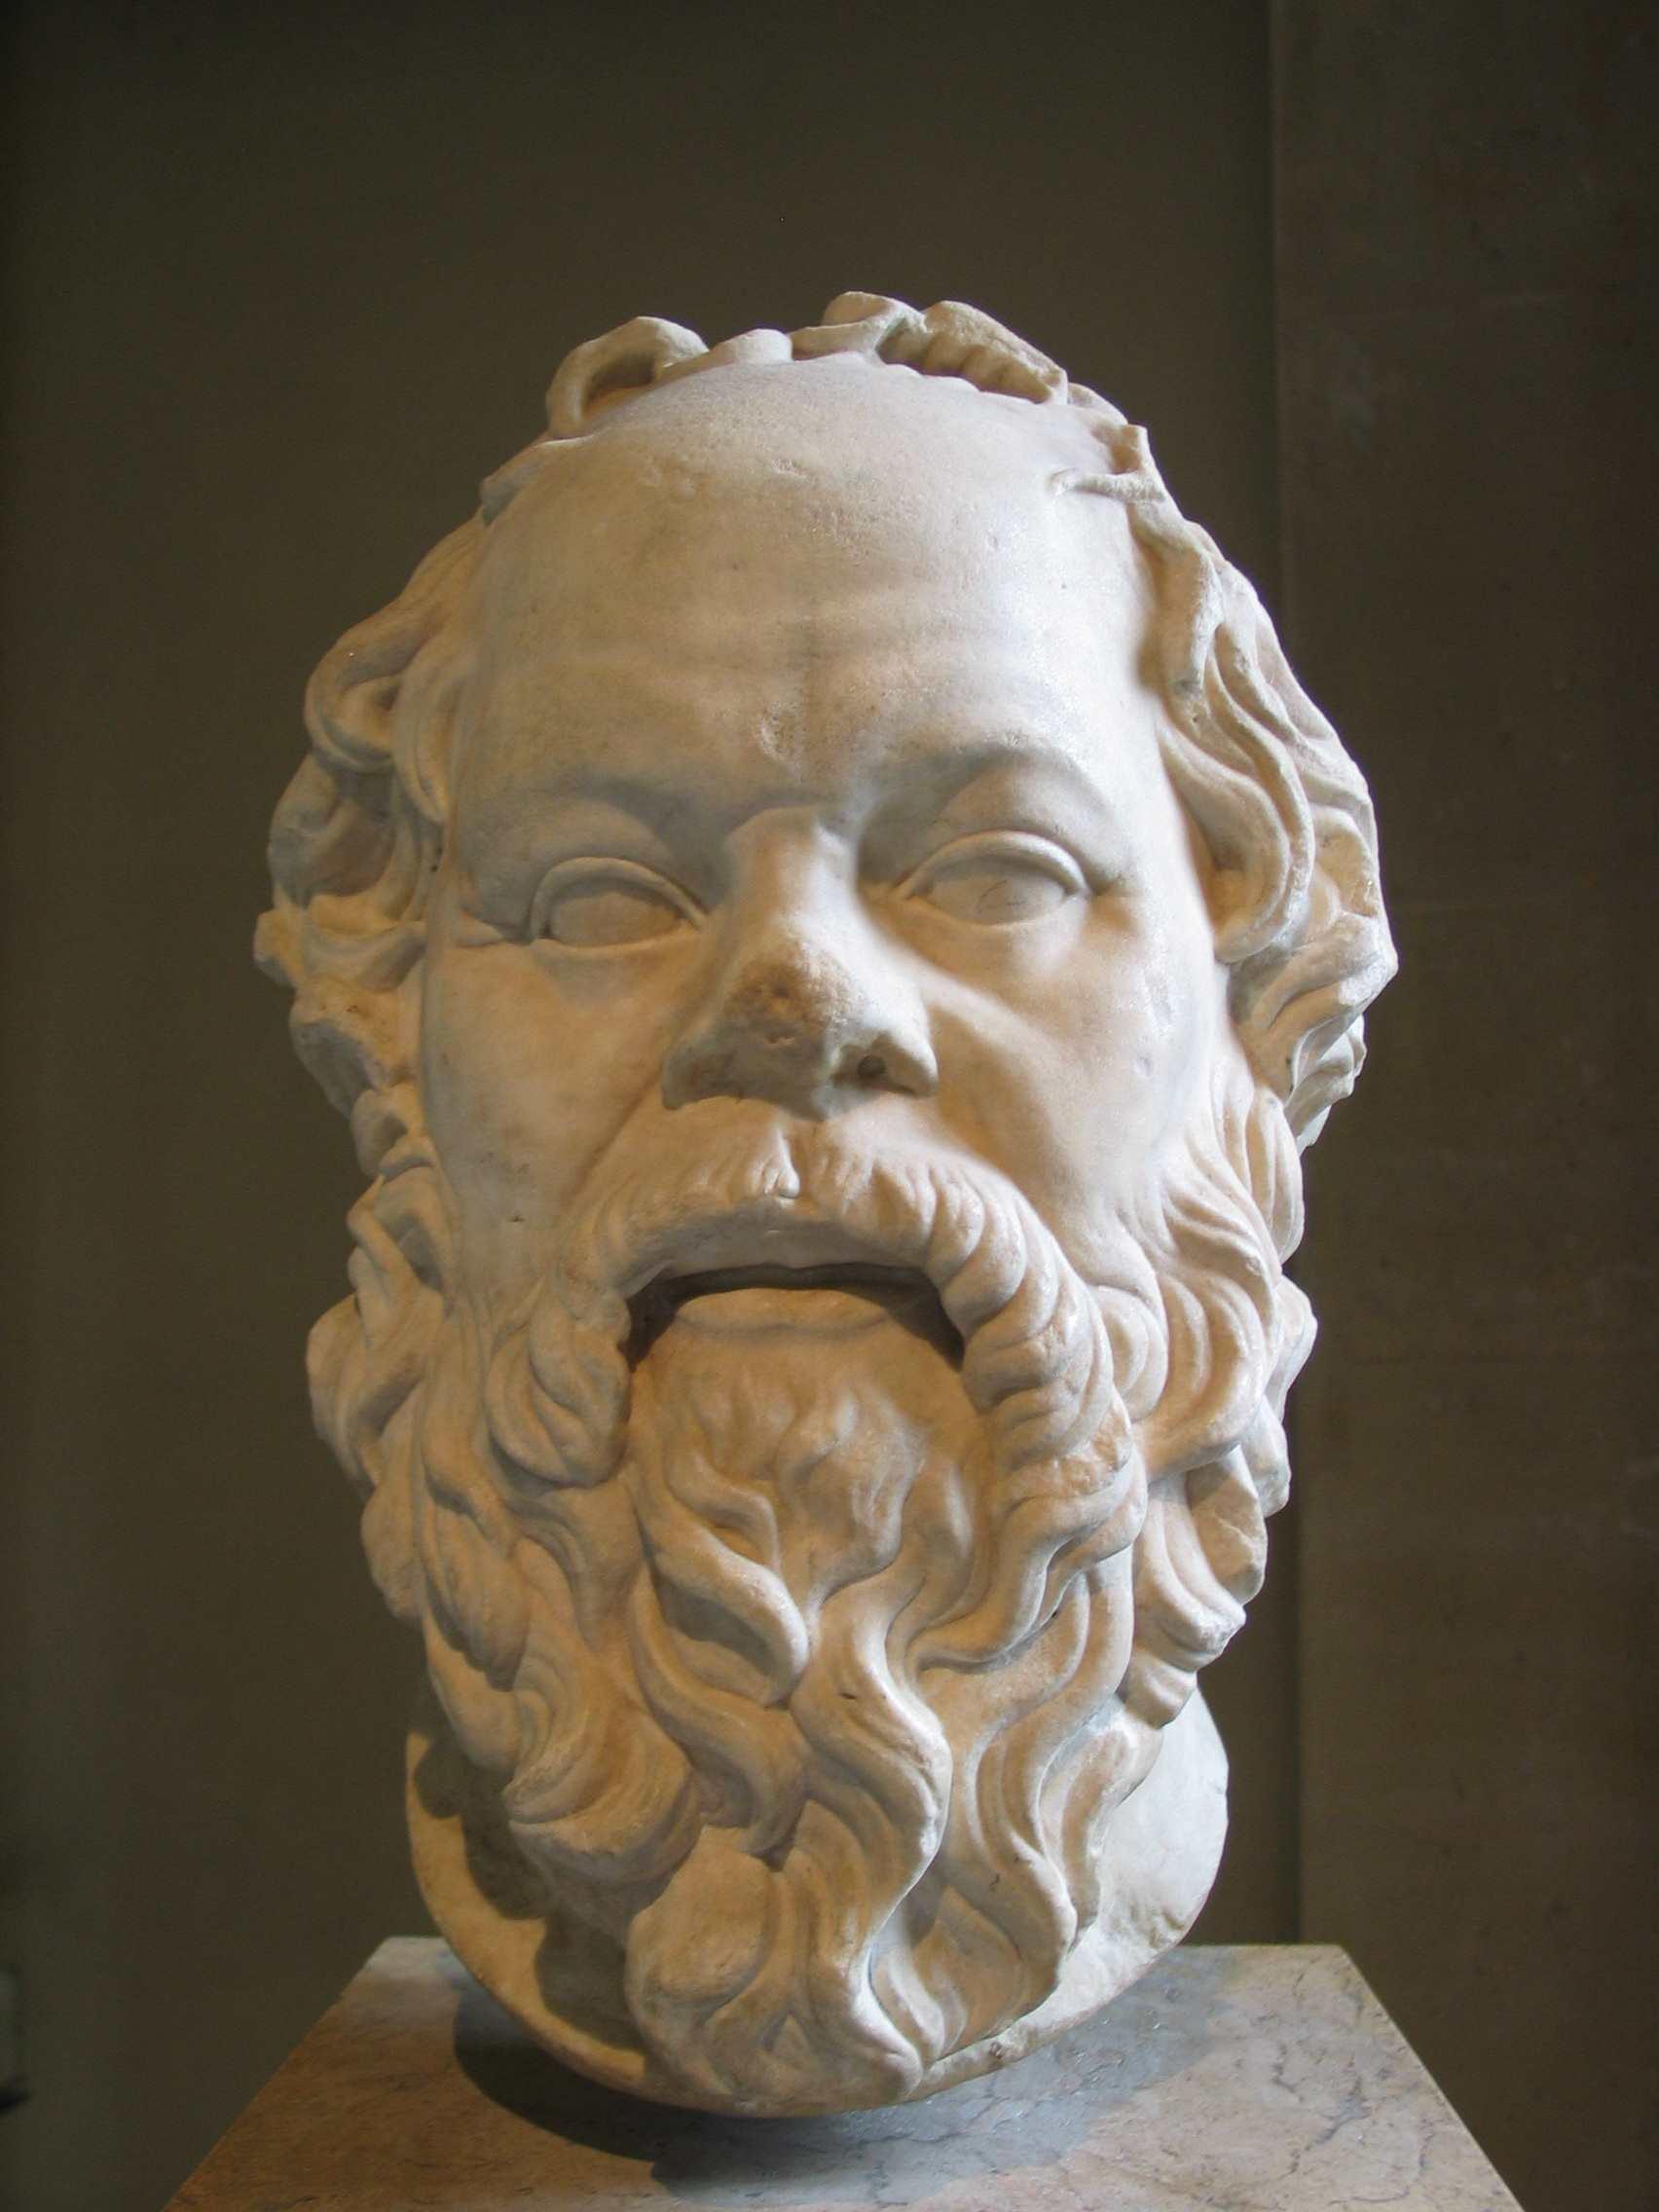 Сократ древнегреческий философ